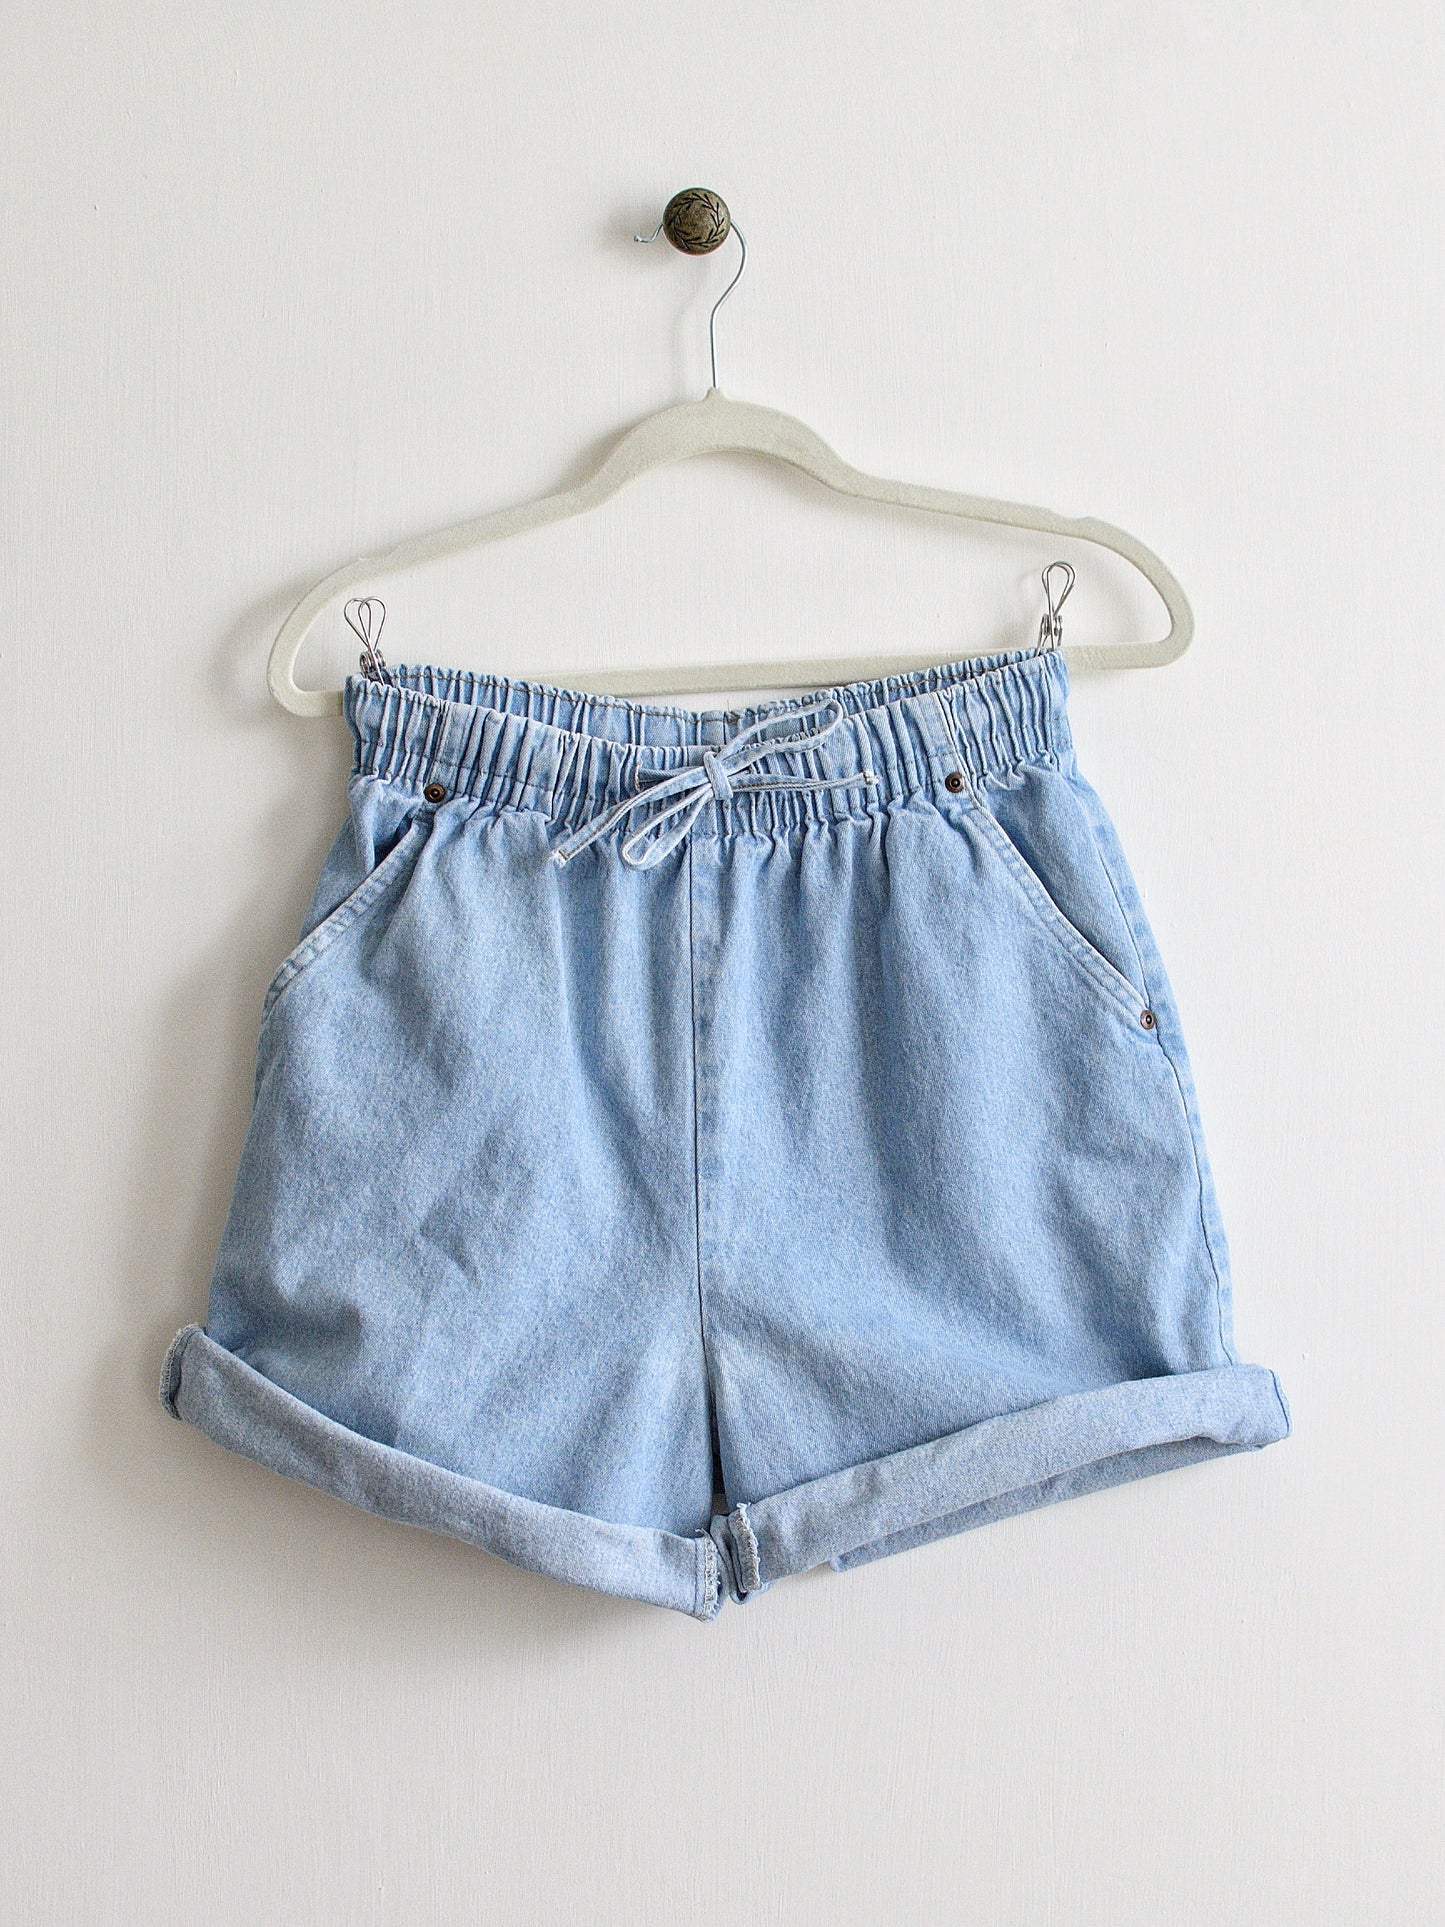 Small/Medium Denim Shorts